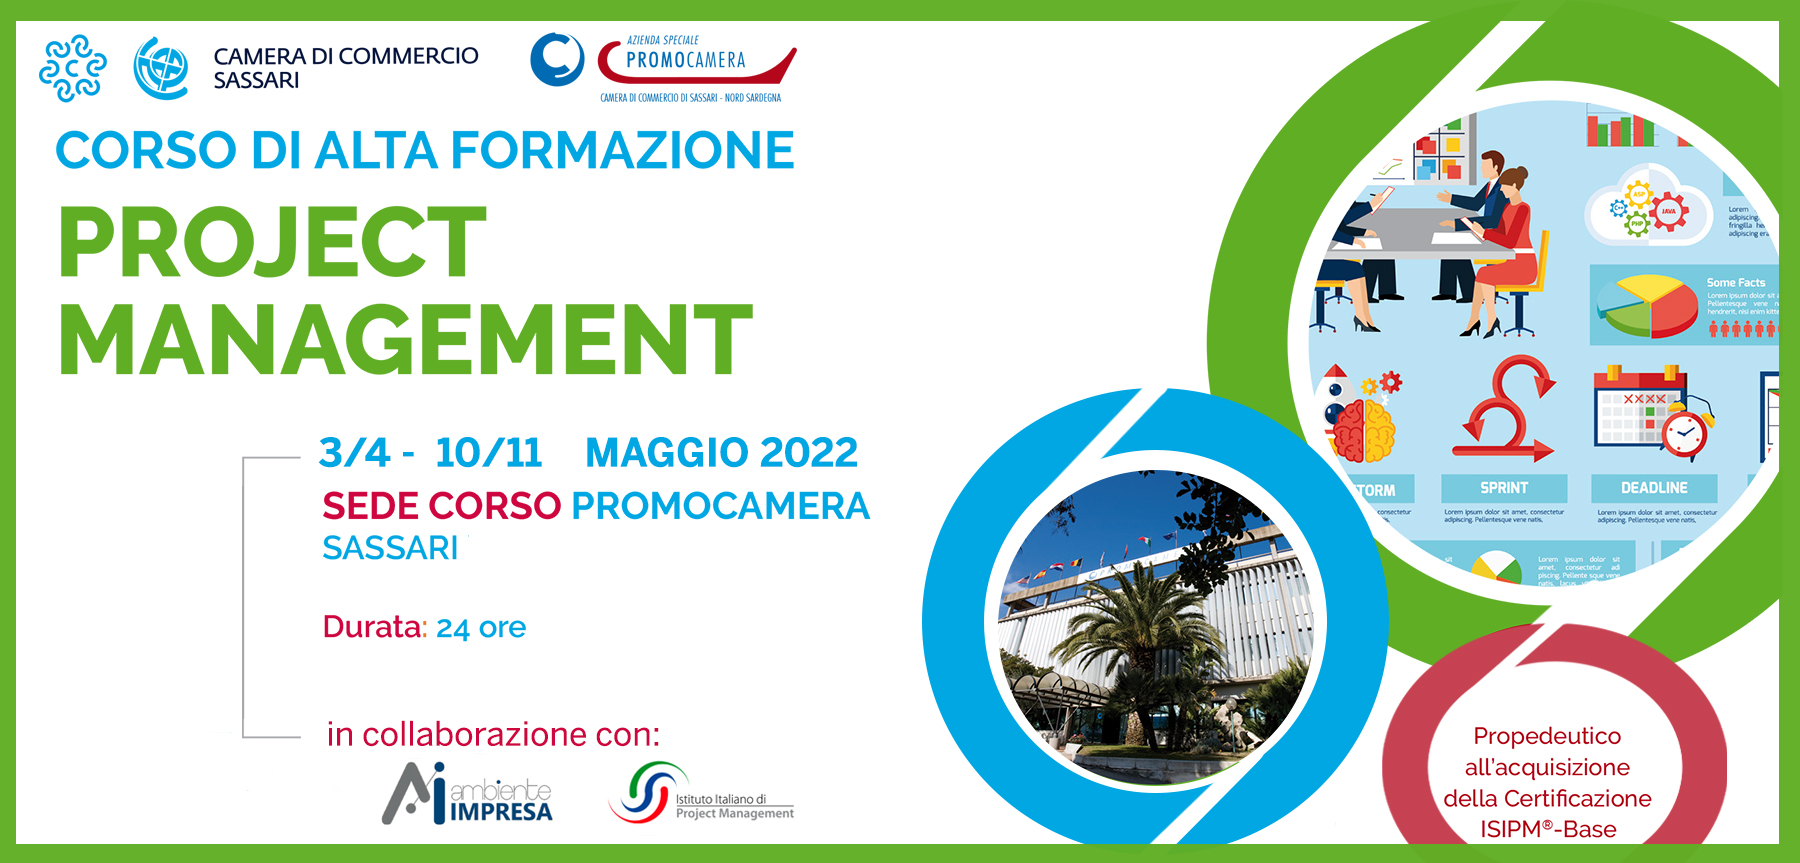 Project Magement base MAGGIO 2022 Promocamera Sassari - Ambiente Impresa srl - Cagliari